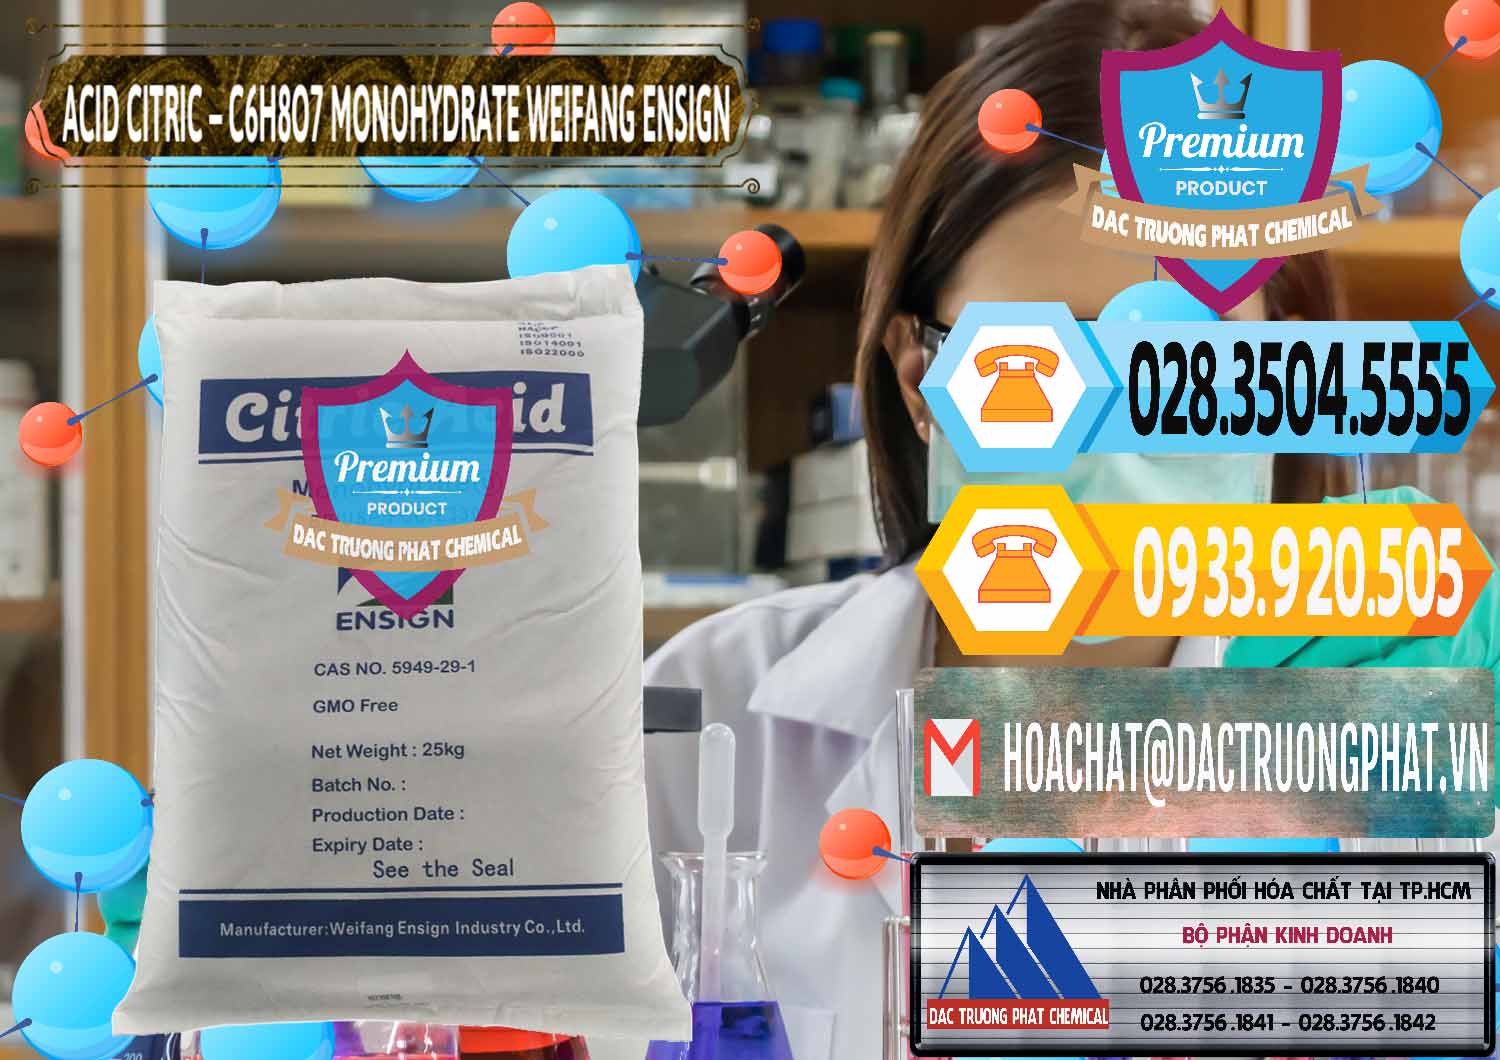 Chuyên kinh doanh _ bán Acid Citric - Axit Citric Monohydrate Weifang Trung Quốc China - 0009 - Nơi phân phối & nhập khẩu hóa chất tại TP.HCM - hoachattayrua.net